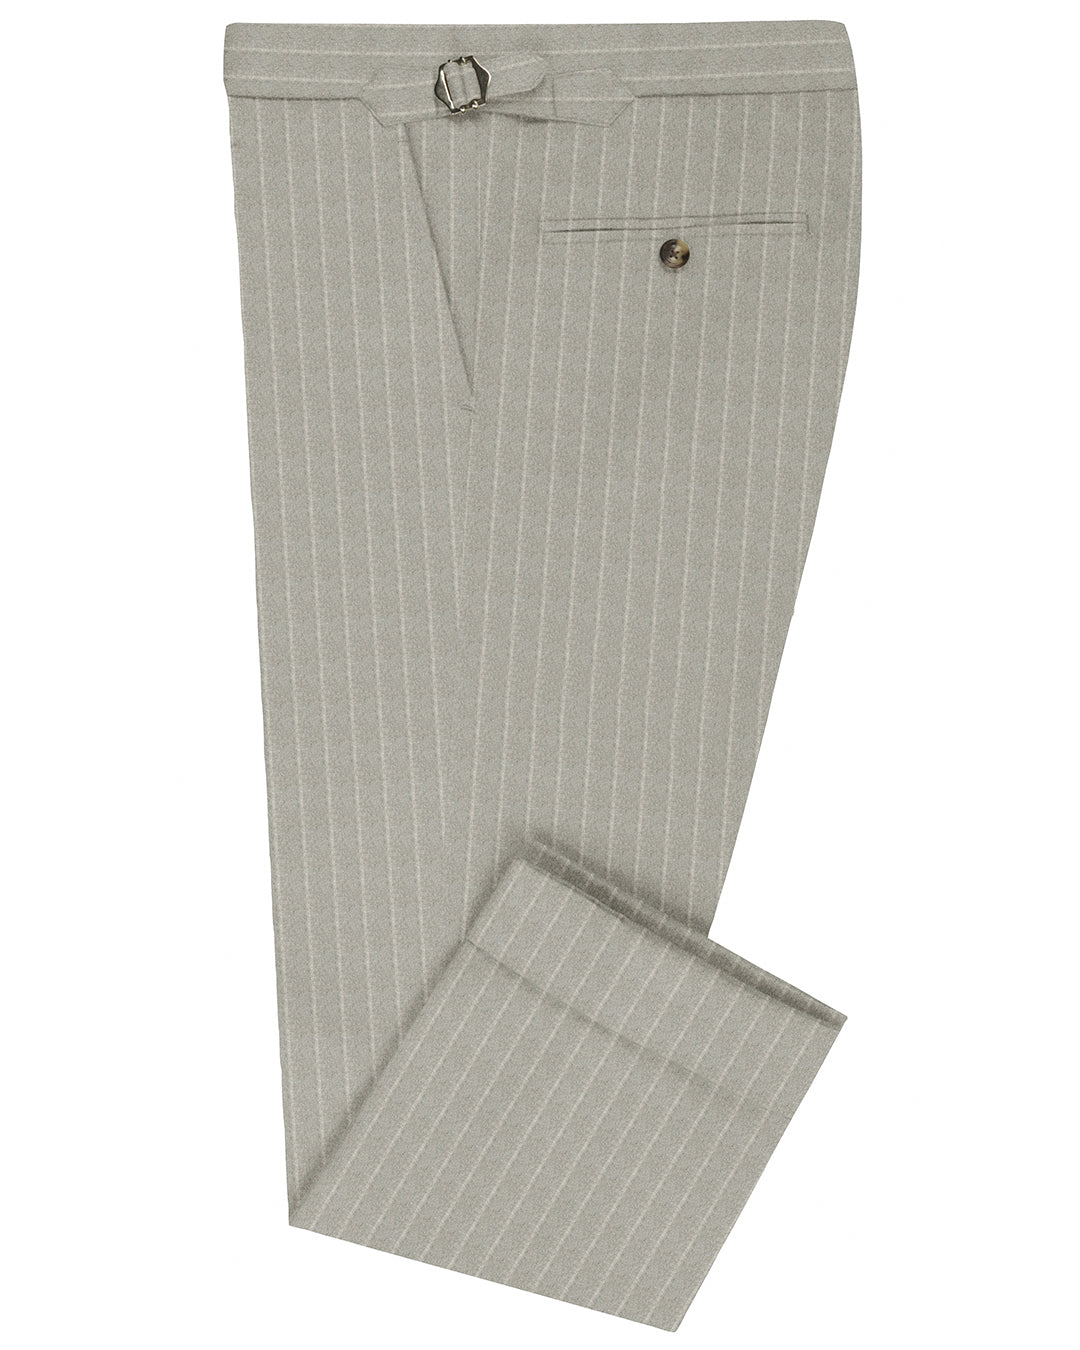 VBC Double Stripes Light Grey Flannel Pants